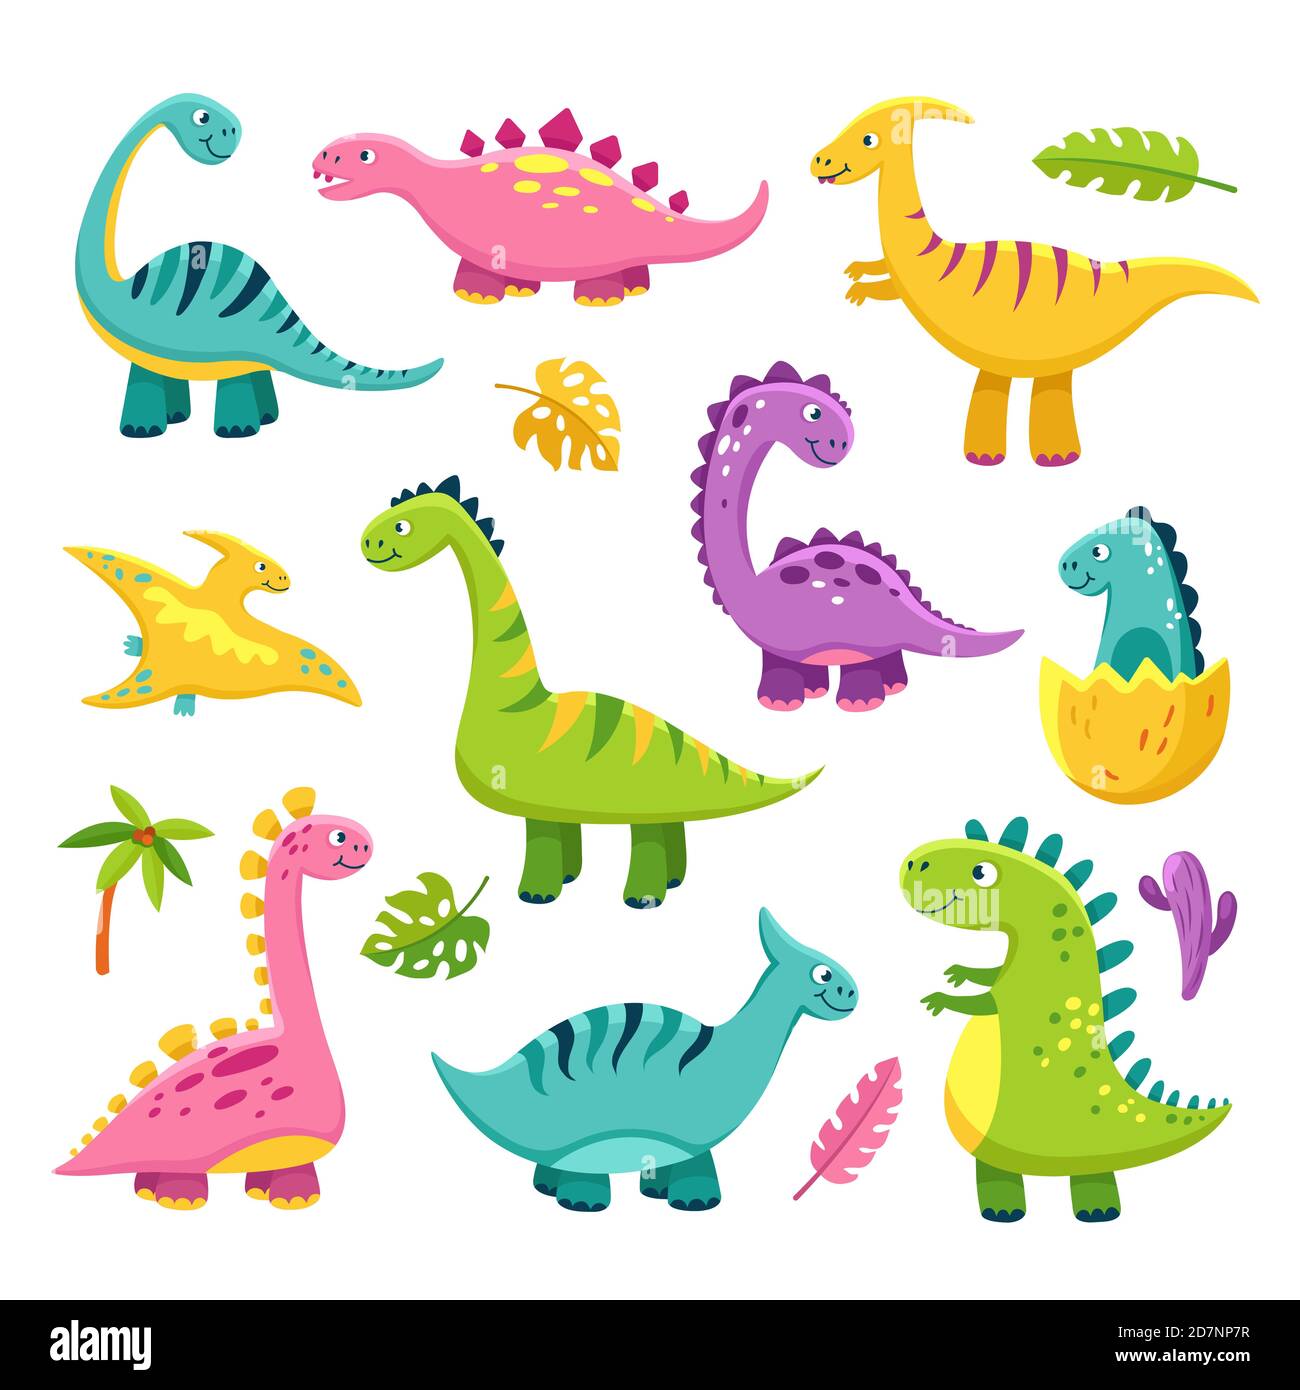 Dinosaur cartoon immagini e fotografie stock ad alta risoluzione - Alamy